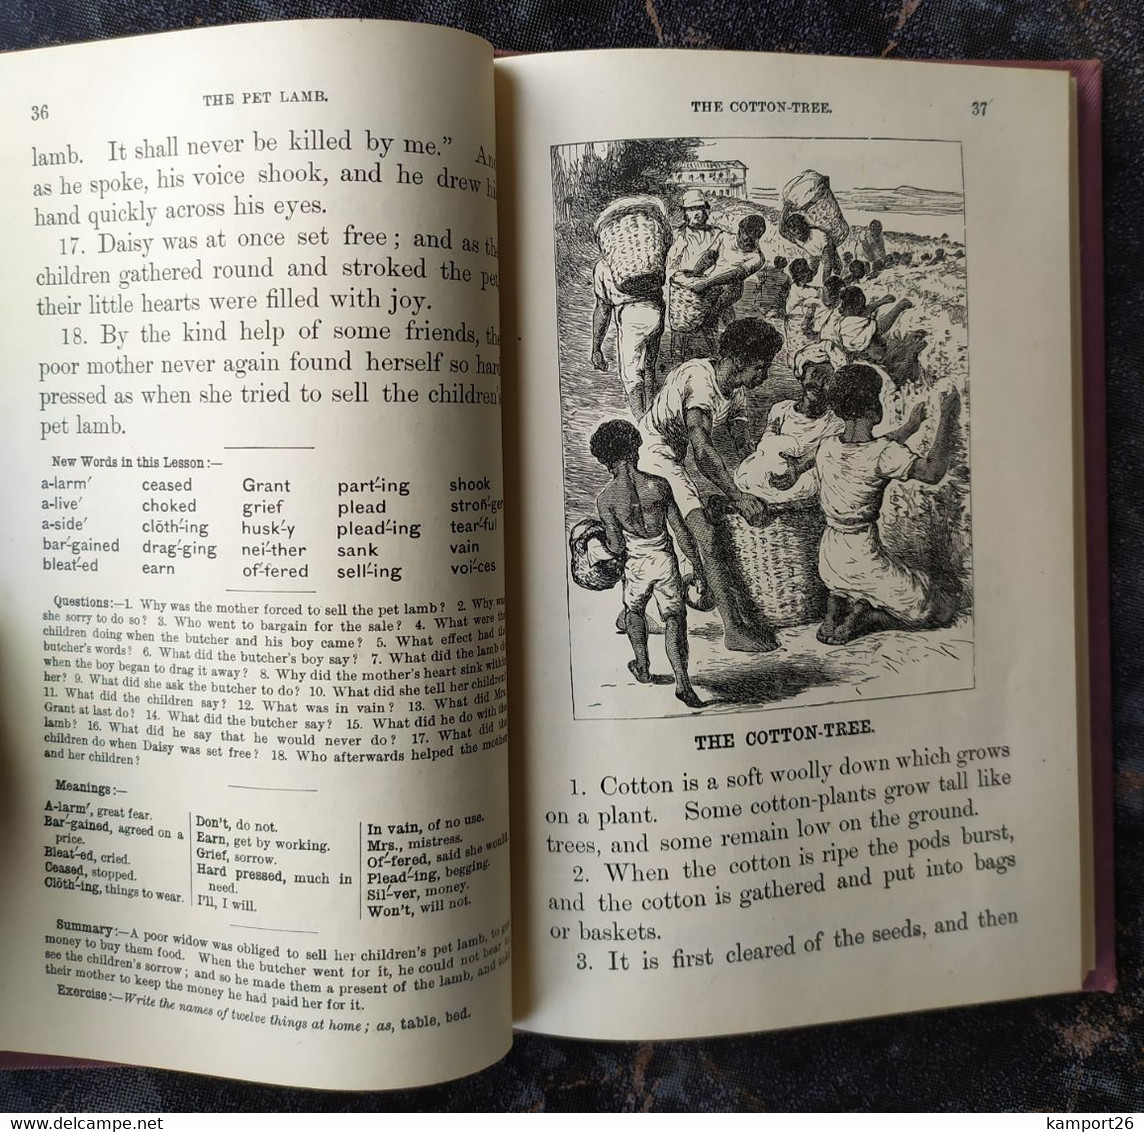 1884 The New ROYAL READERS Second Book ENGRAVINGS Royal School Series Rare L'ÉCOLE DE LA SÉRIE - Education/ Teaching